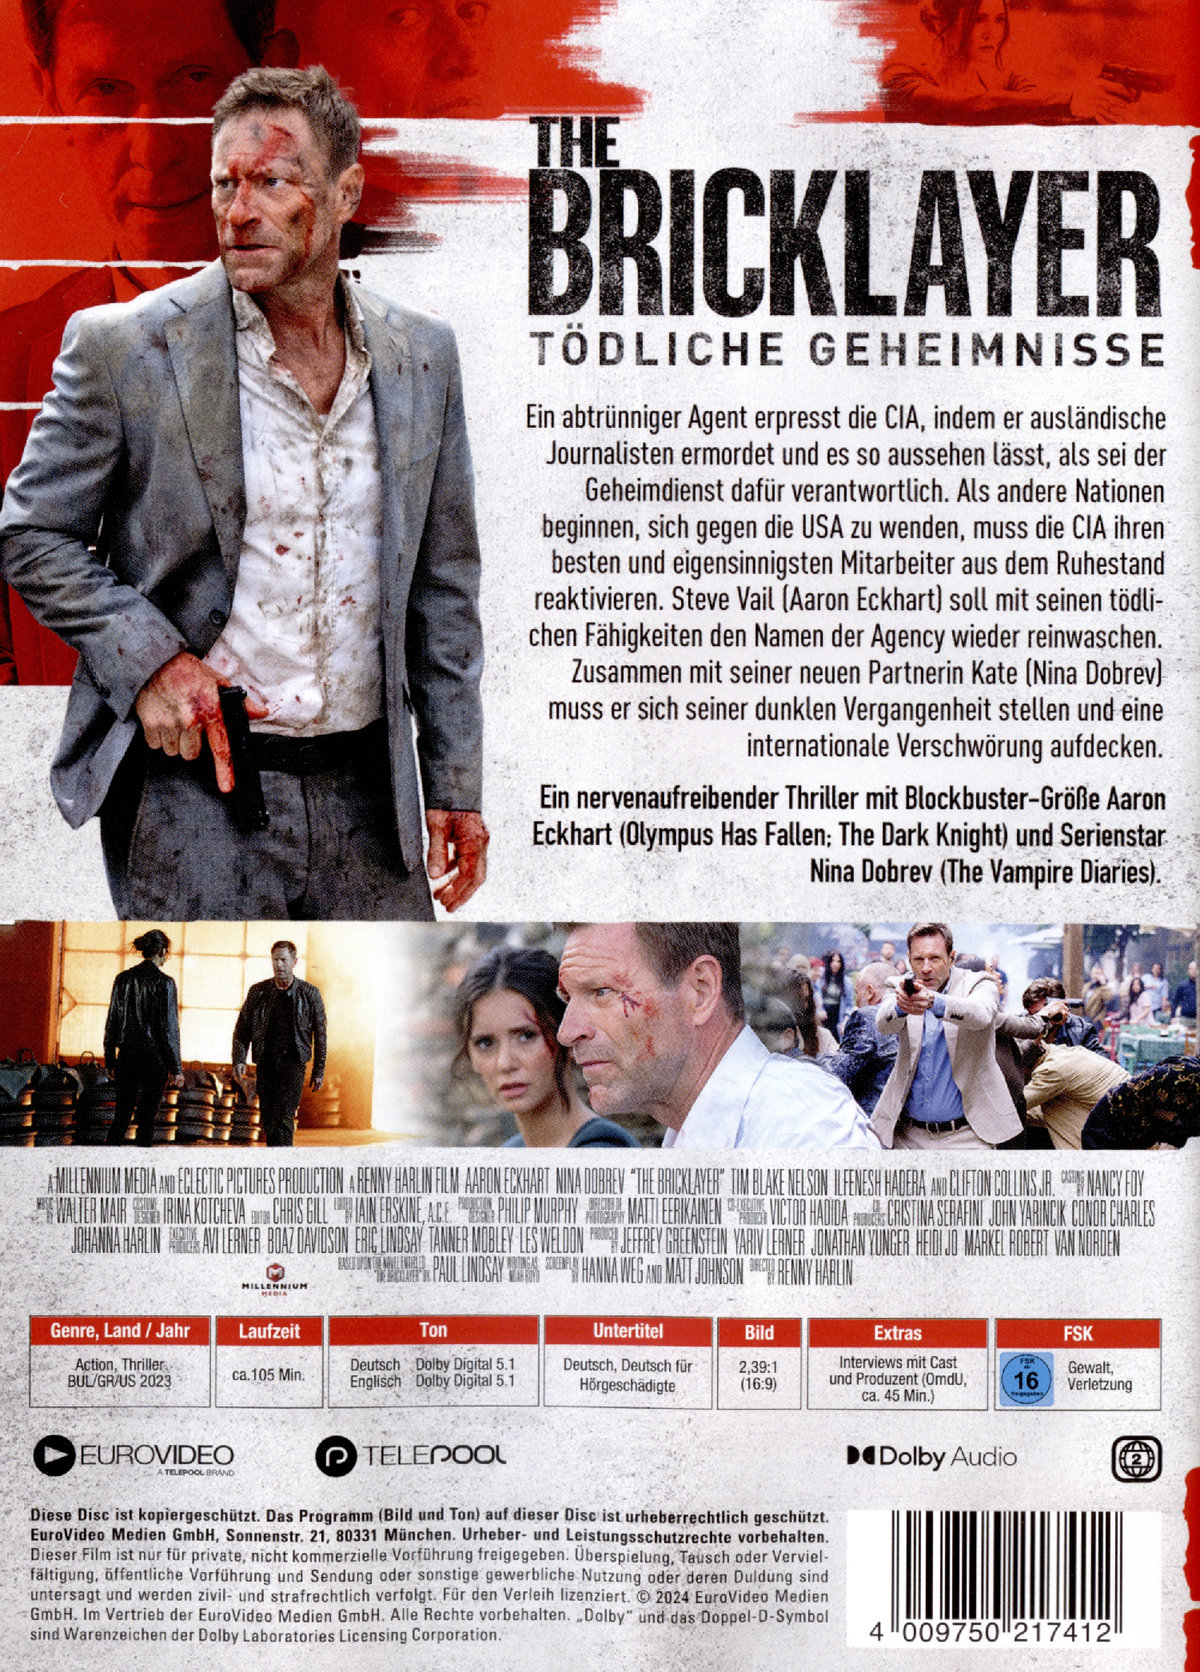 The Bricklayer - Tödliche Geheimnisse  (DVD)